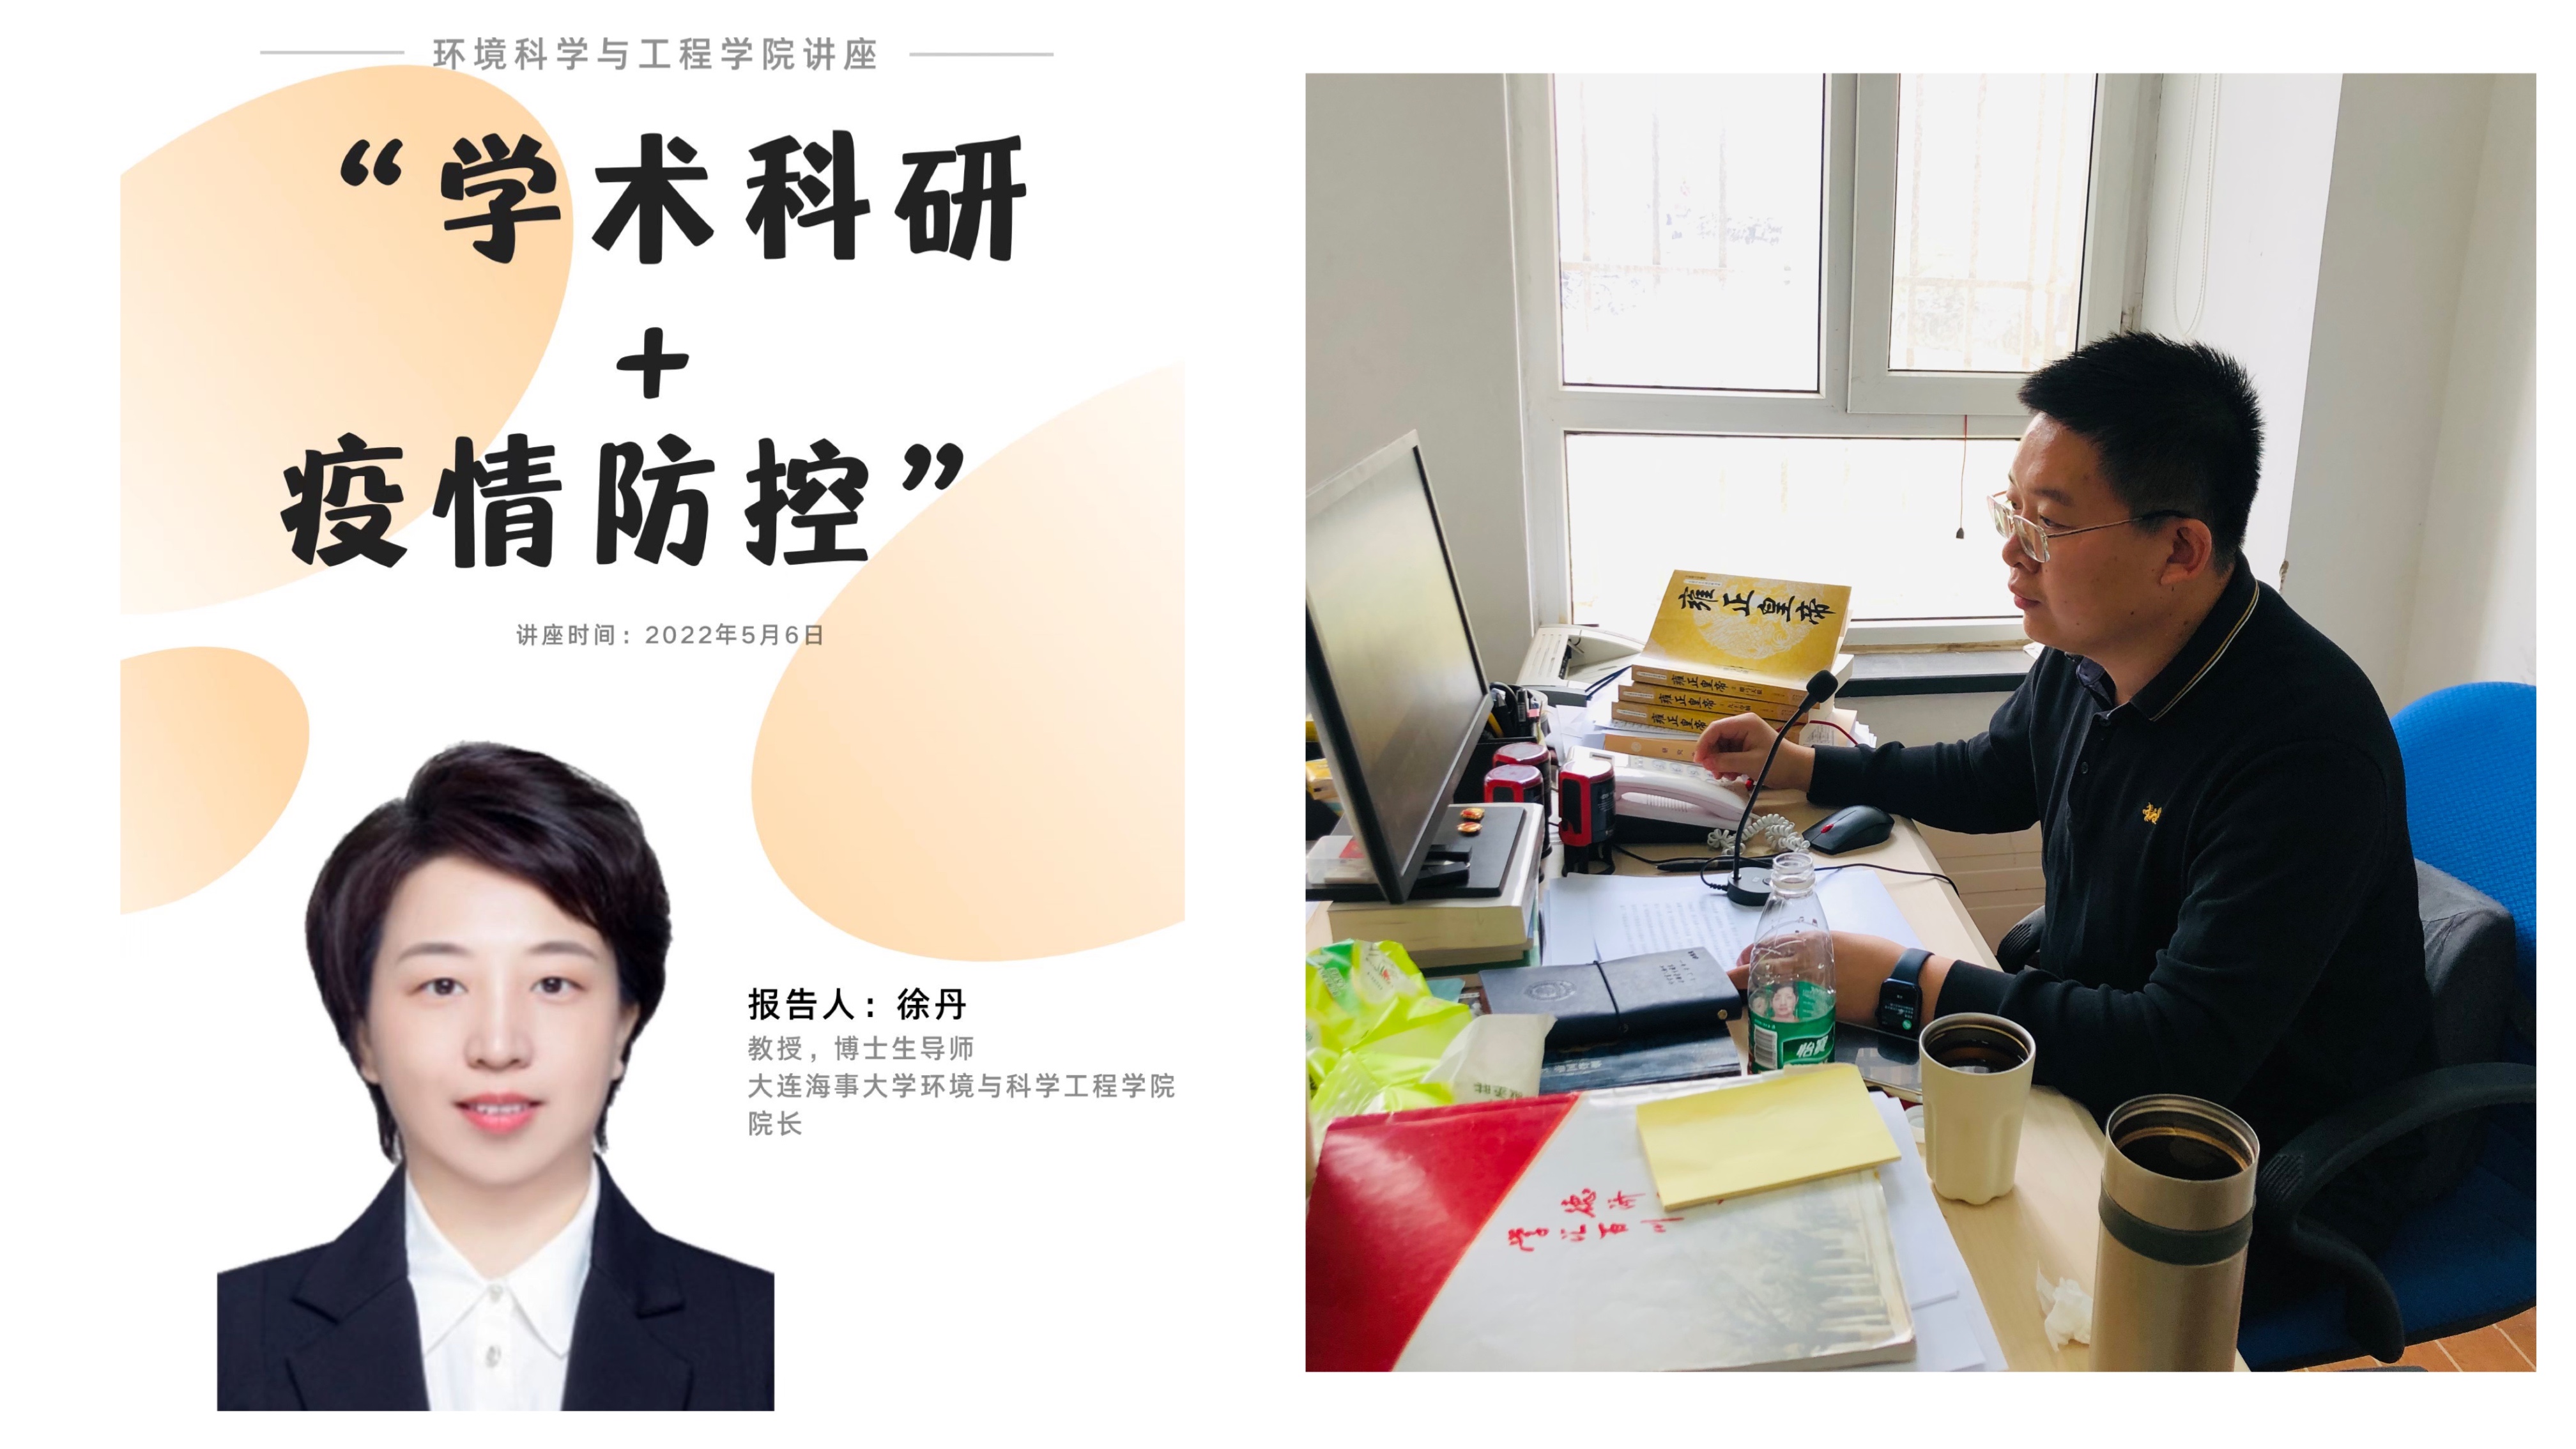 5月6日,环境科学与工程学院院长徐丹教授以《疫情防控背景下研究生